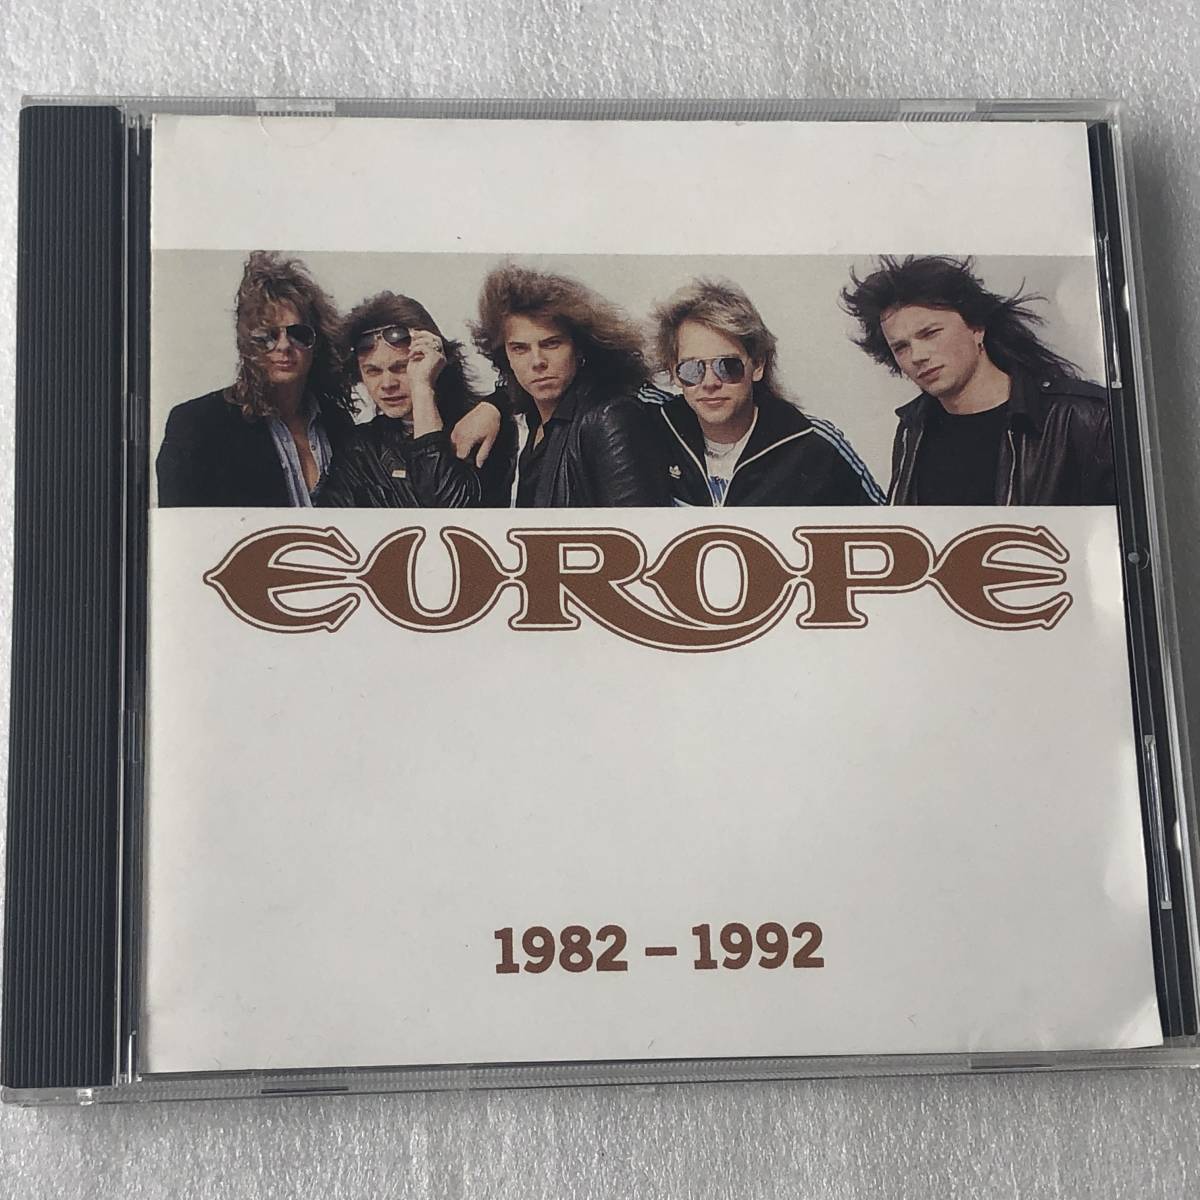 中古CD Europe ヨーロッパ/1982-1992 ベスト盤(1992年 EK 57445) スウェーデン産HR/HM,ハードロック系_画像1